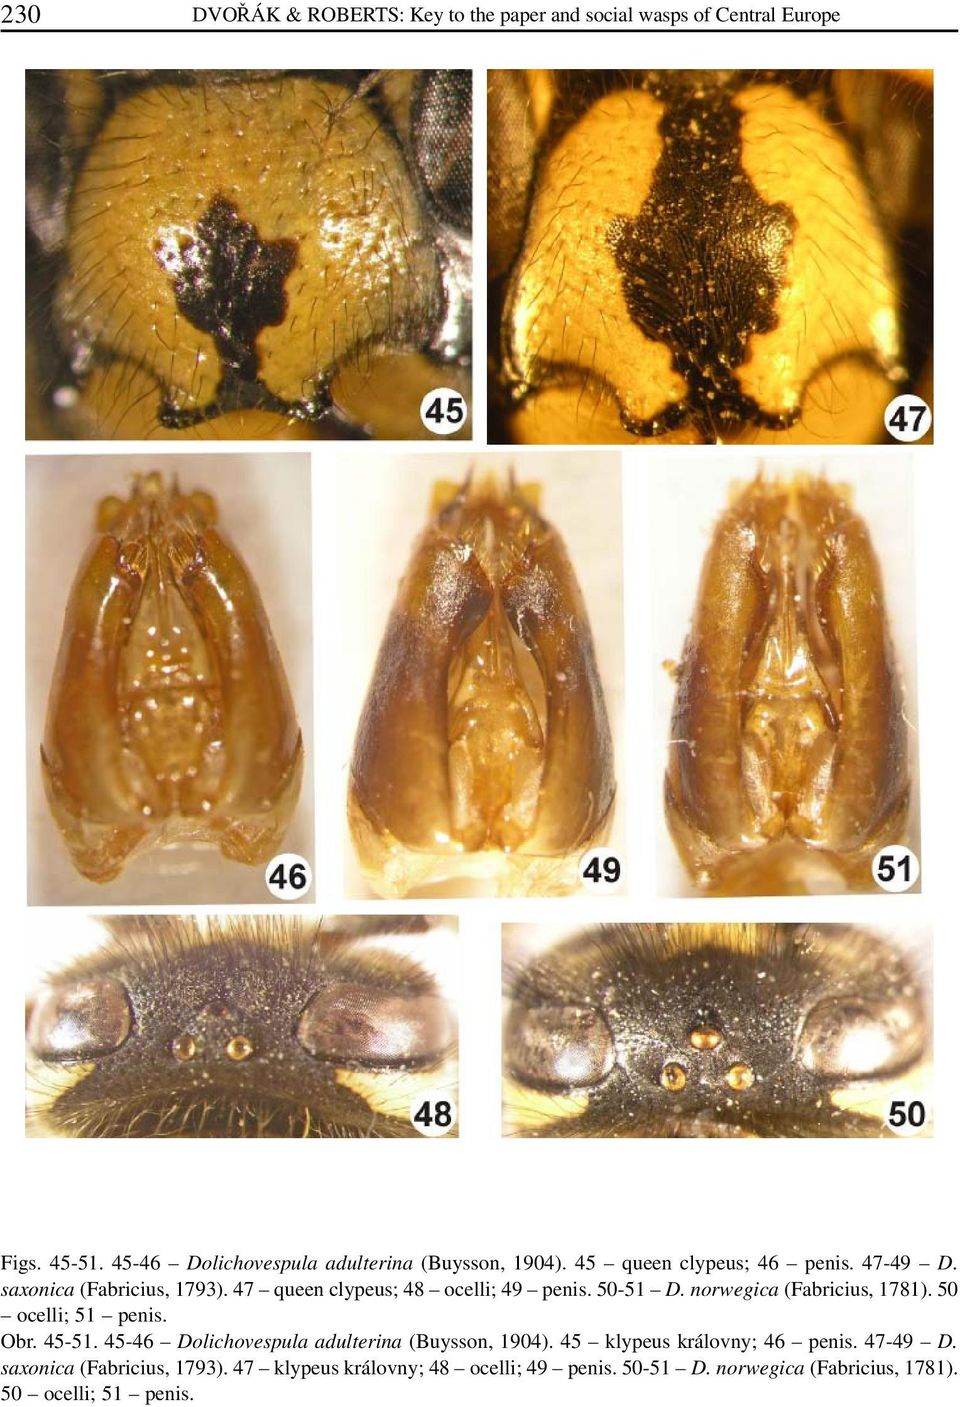 47 queen clypeus; 48 ocelli; 49 penis. 50-51 D. norwegica (Fabricius, 1781). 50 ocelli; 51 penis. Obr. 45-51.